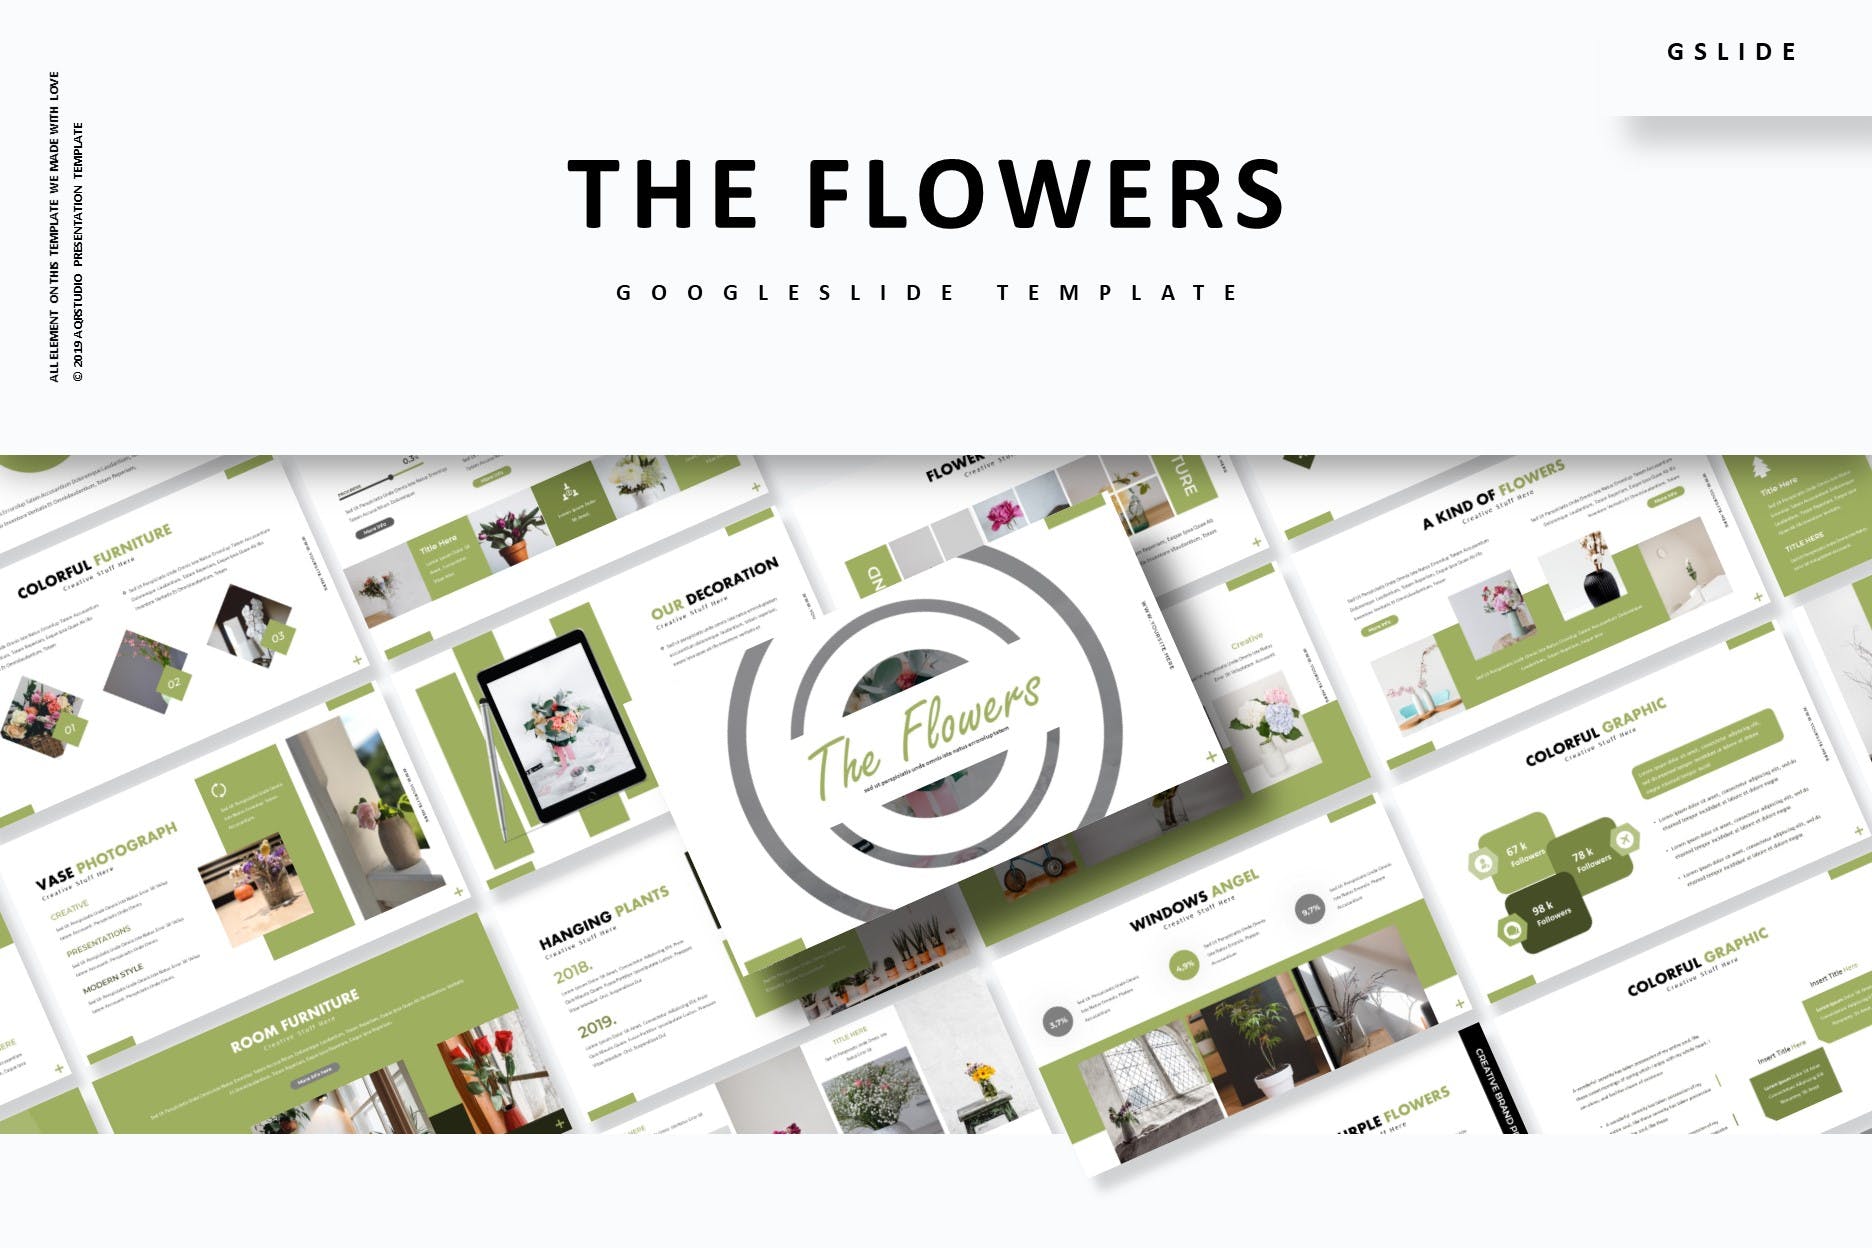 谷歌幻灯片演示花店花卉产品展示文稿模板 The Flowers – Google Slides Template设计素材模板